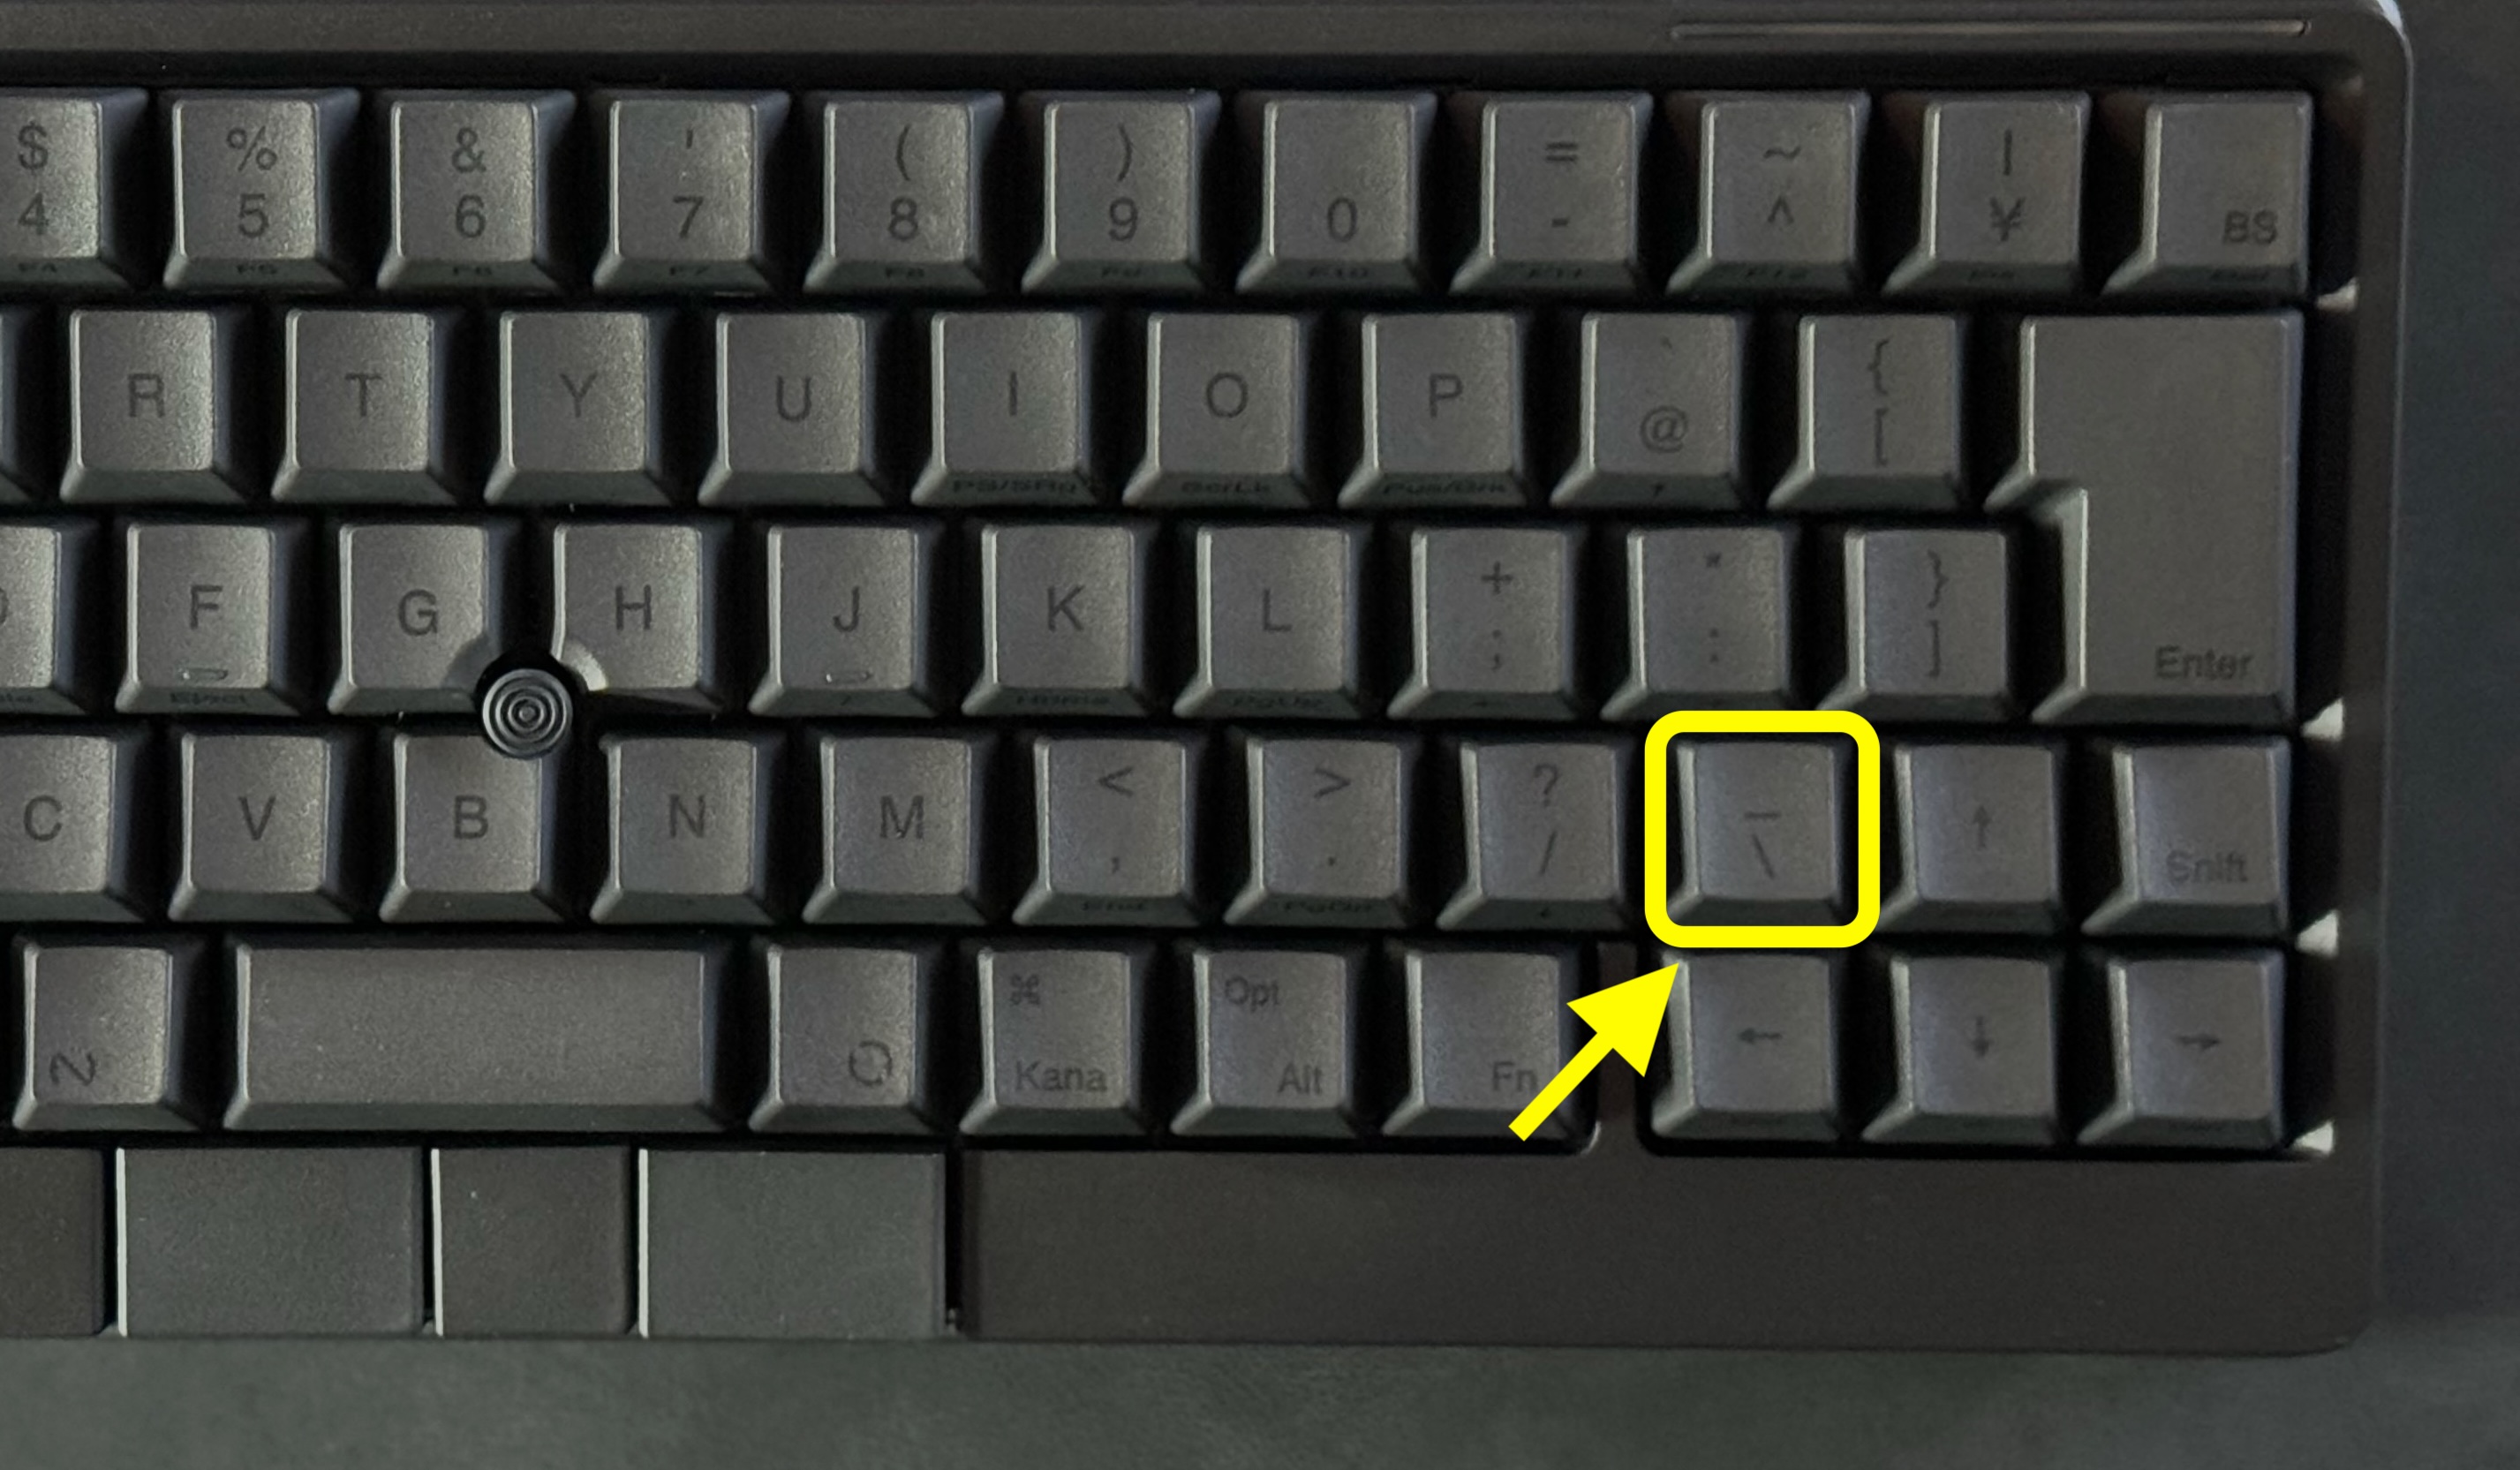 右Shiftキーの左隣のキーを押す際は上記キーを押す